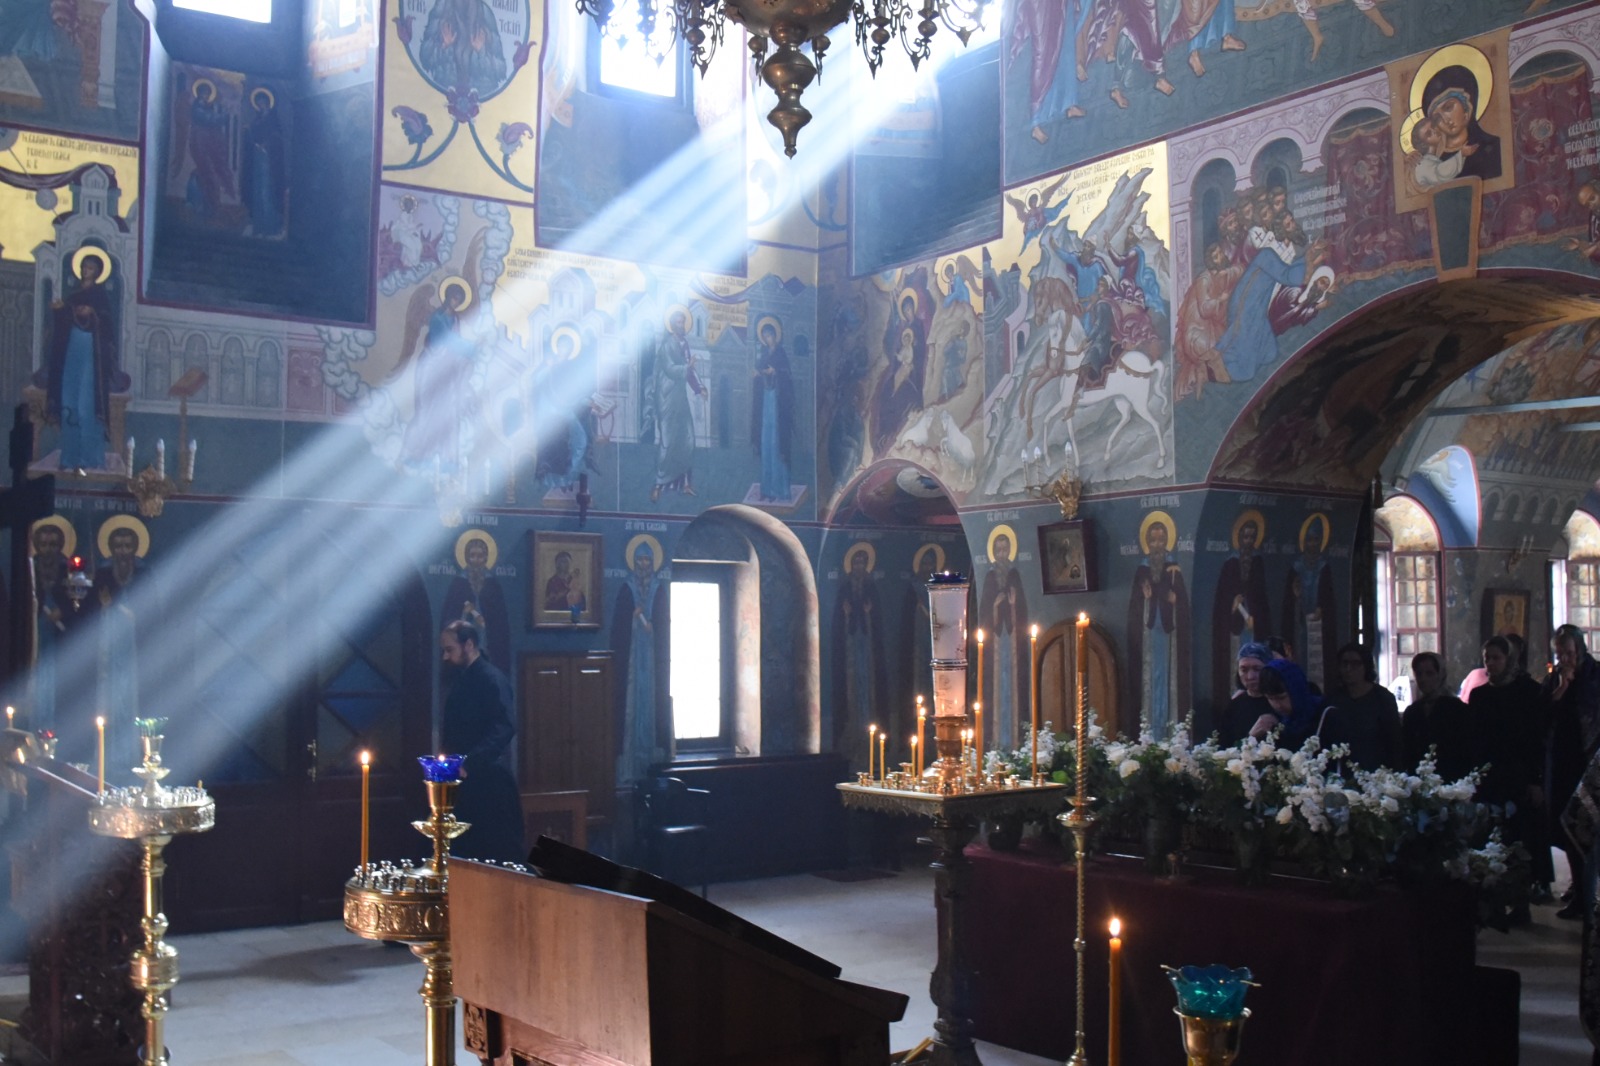 Что изменилось в Законе Латвийской Православной Церкви?